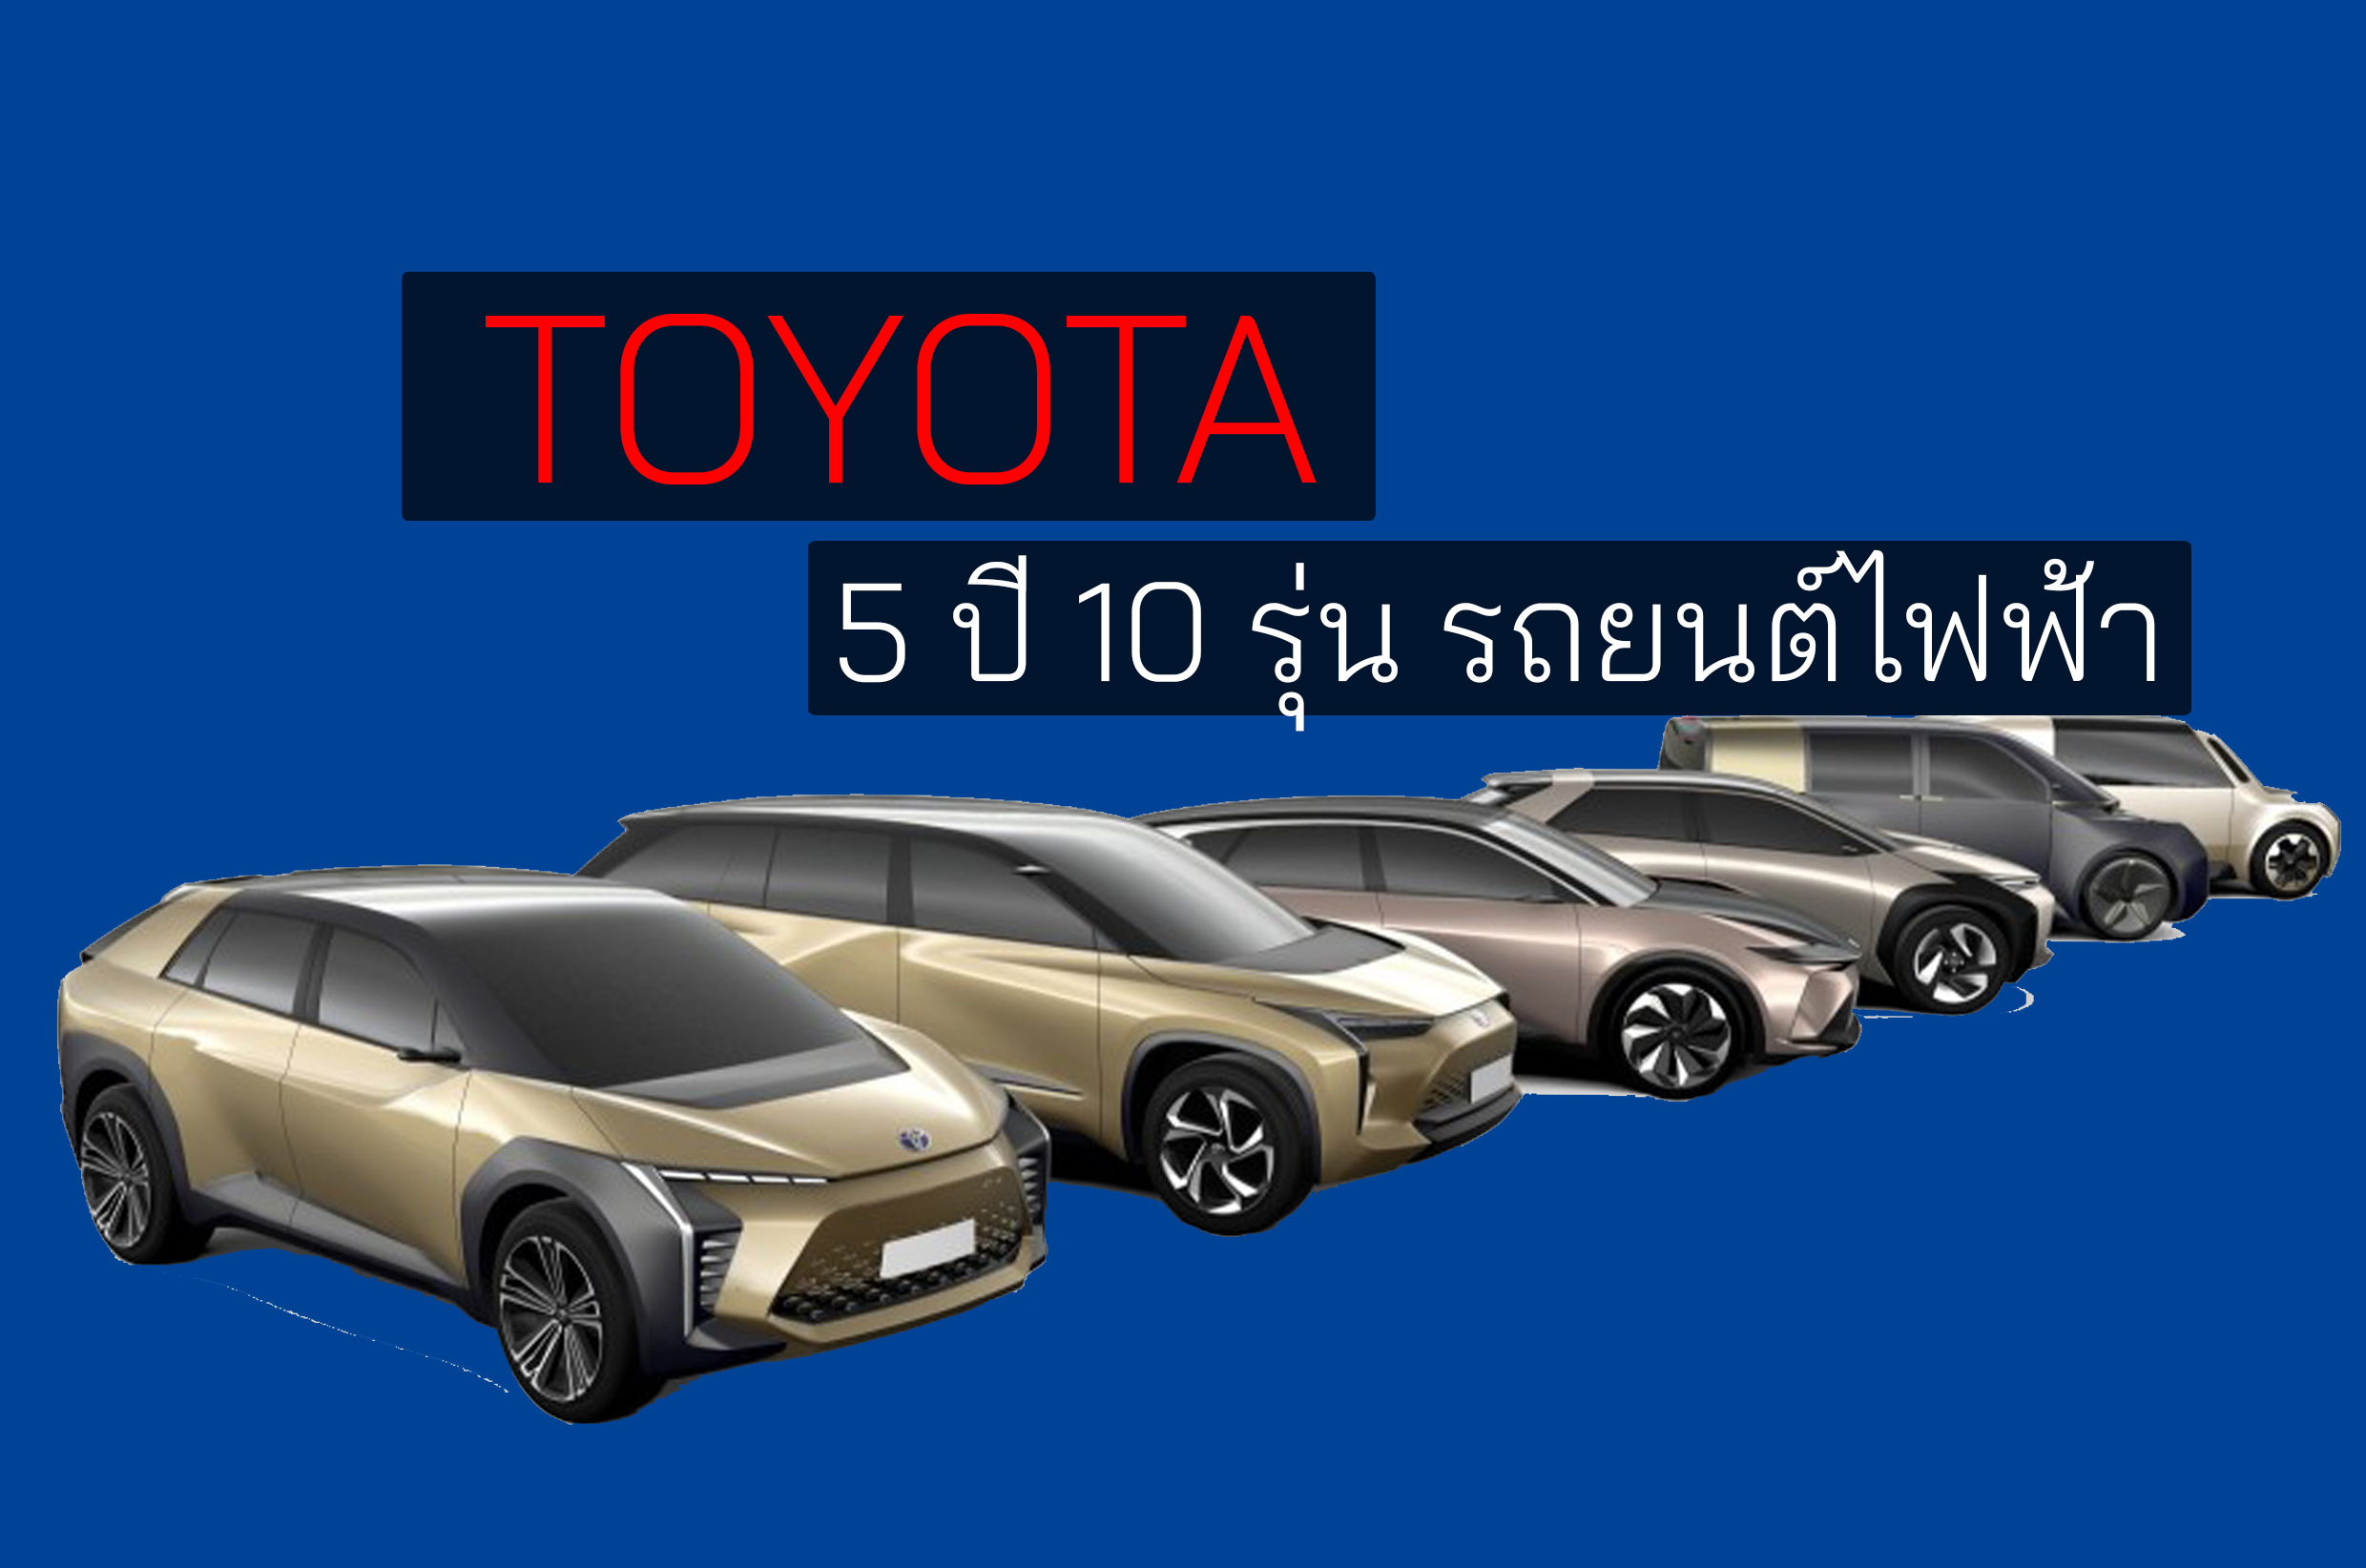 Toyota ภายใน 5 ปี ผลิตรถไฟฟ้า 10 รุ่น ตอบรับอนาคต